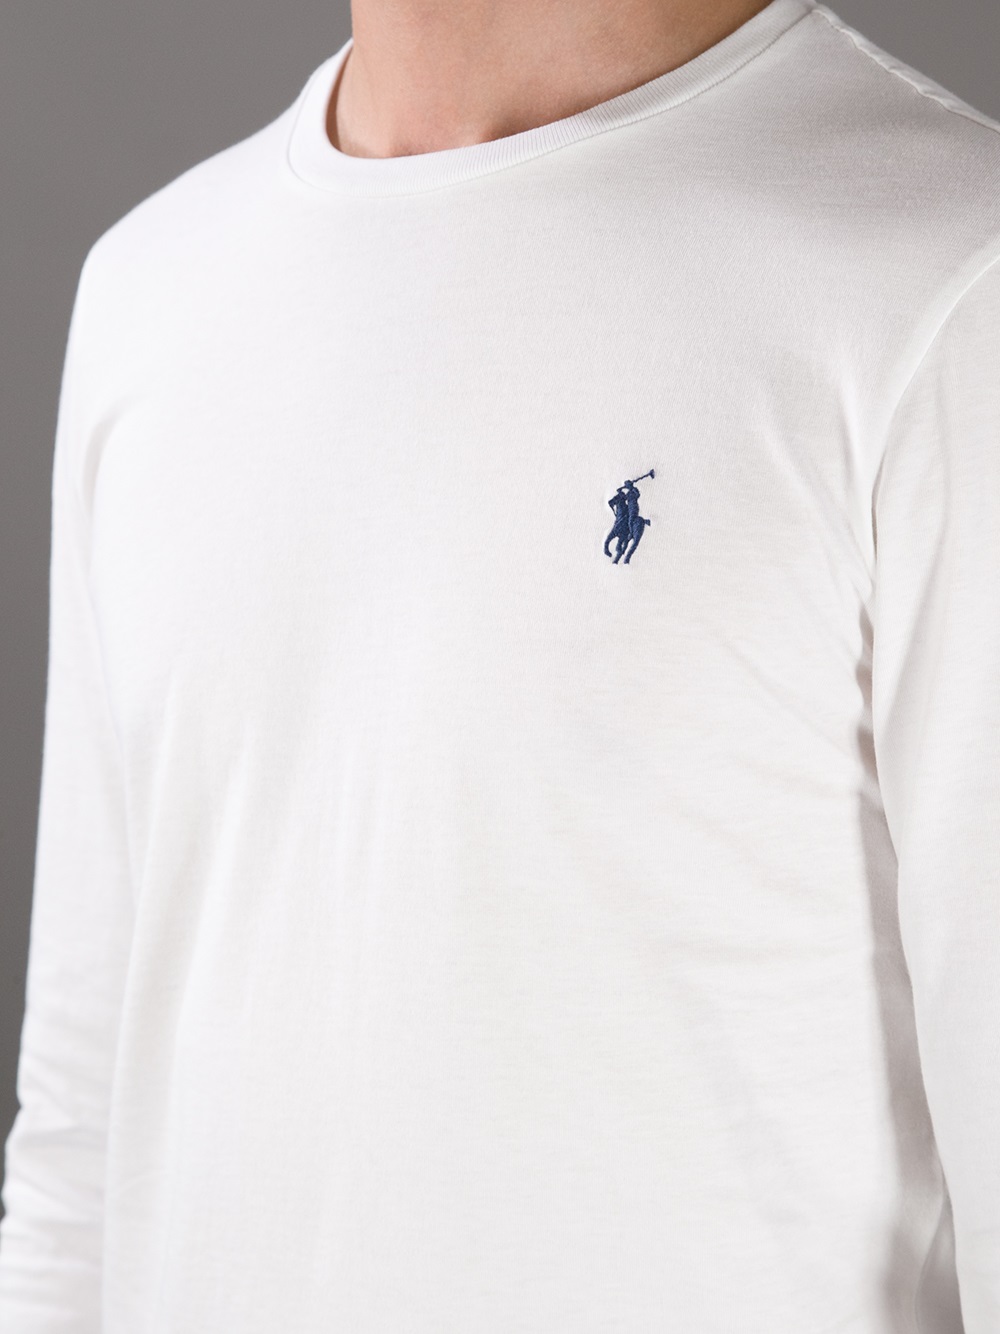 Lyst - Polo Ralph Lauren Long Sleeve Tshirt in White for Men